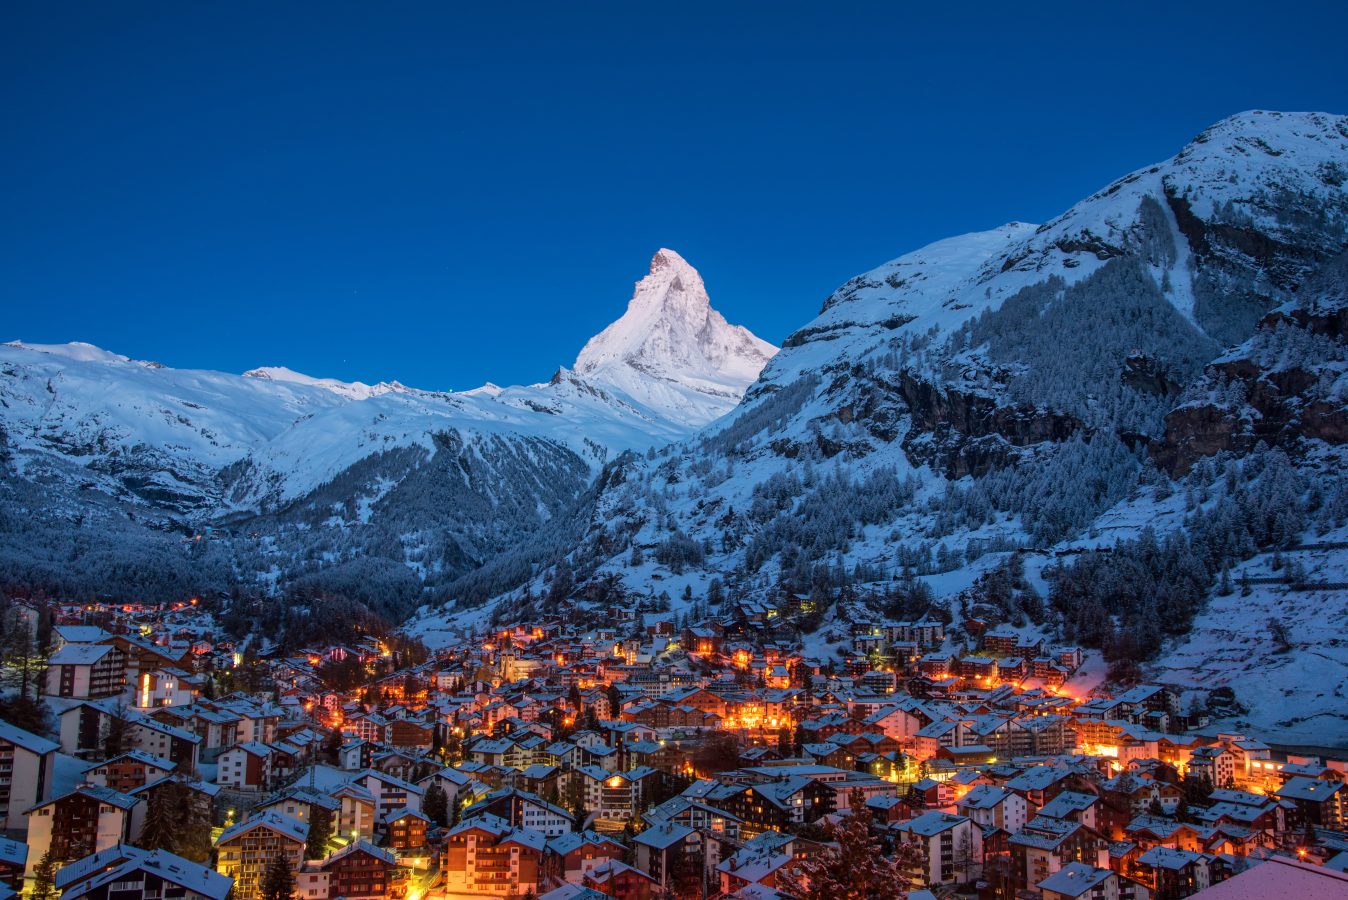 Zermatt city village in the Valley and Matterhorn Peak in the background in Switzerland with snowy winter season.